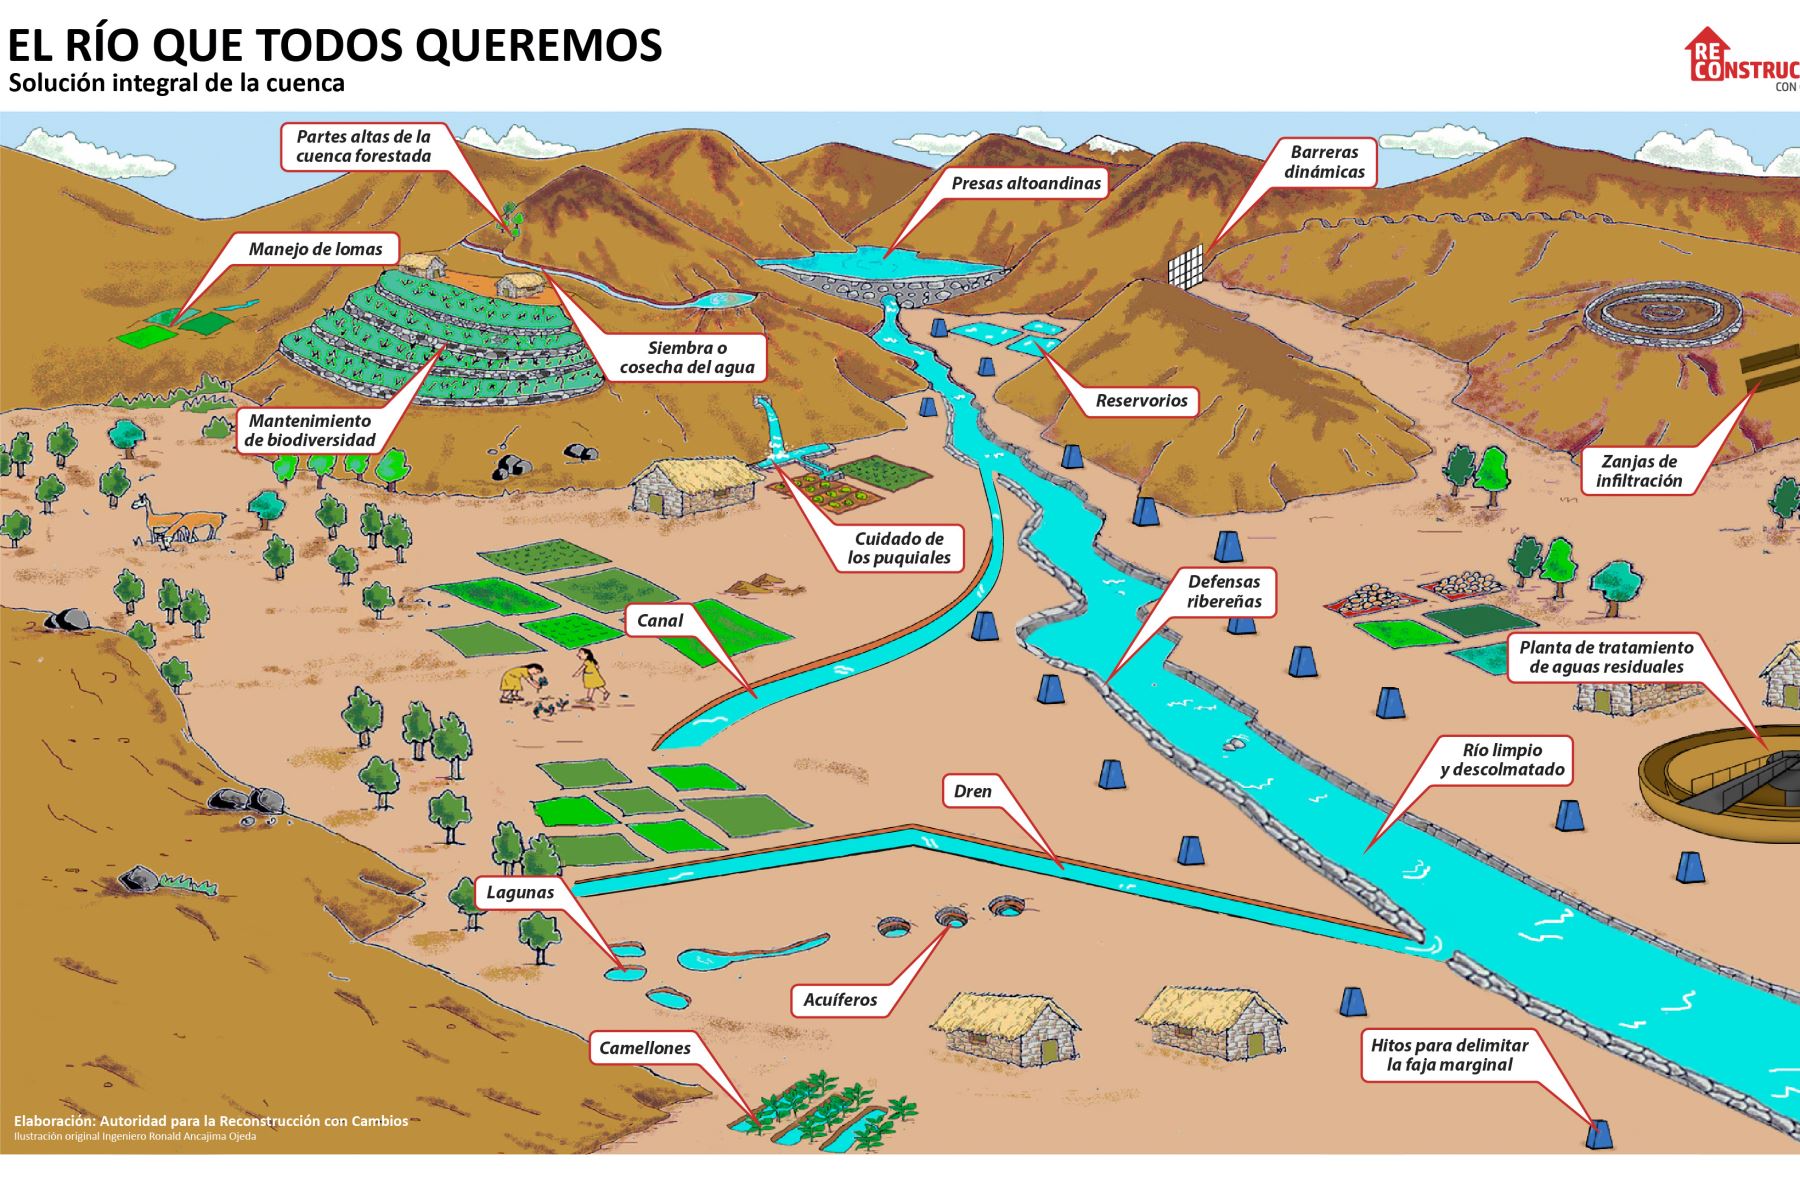 Solución integral de la cuenca planteada por la Autoridad para la Reconstrucción con Cambios (ARCC).